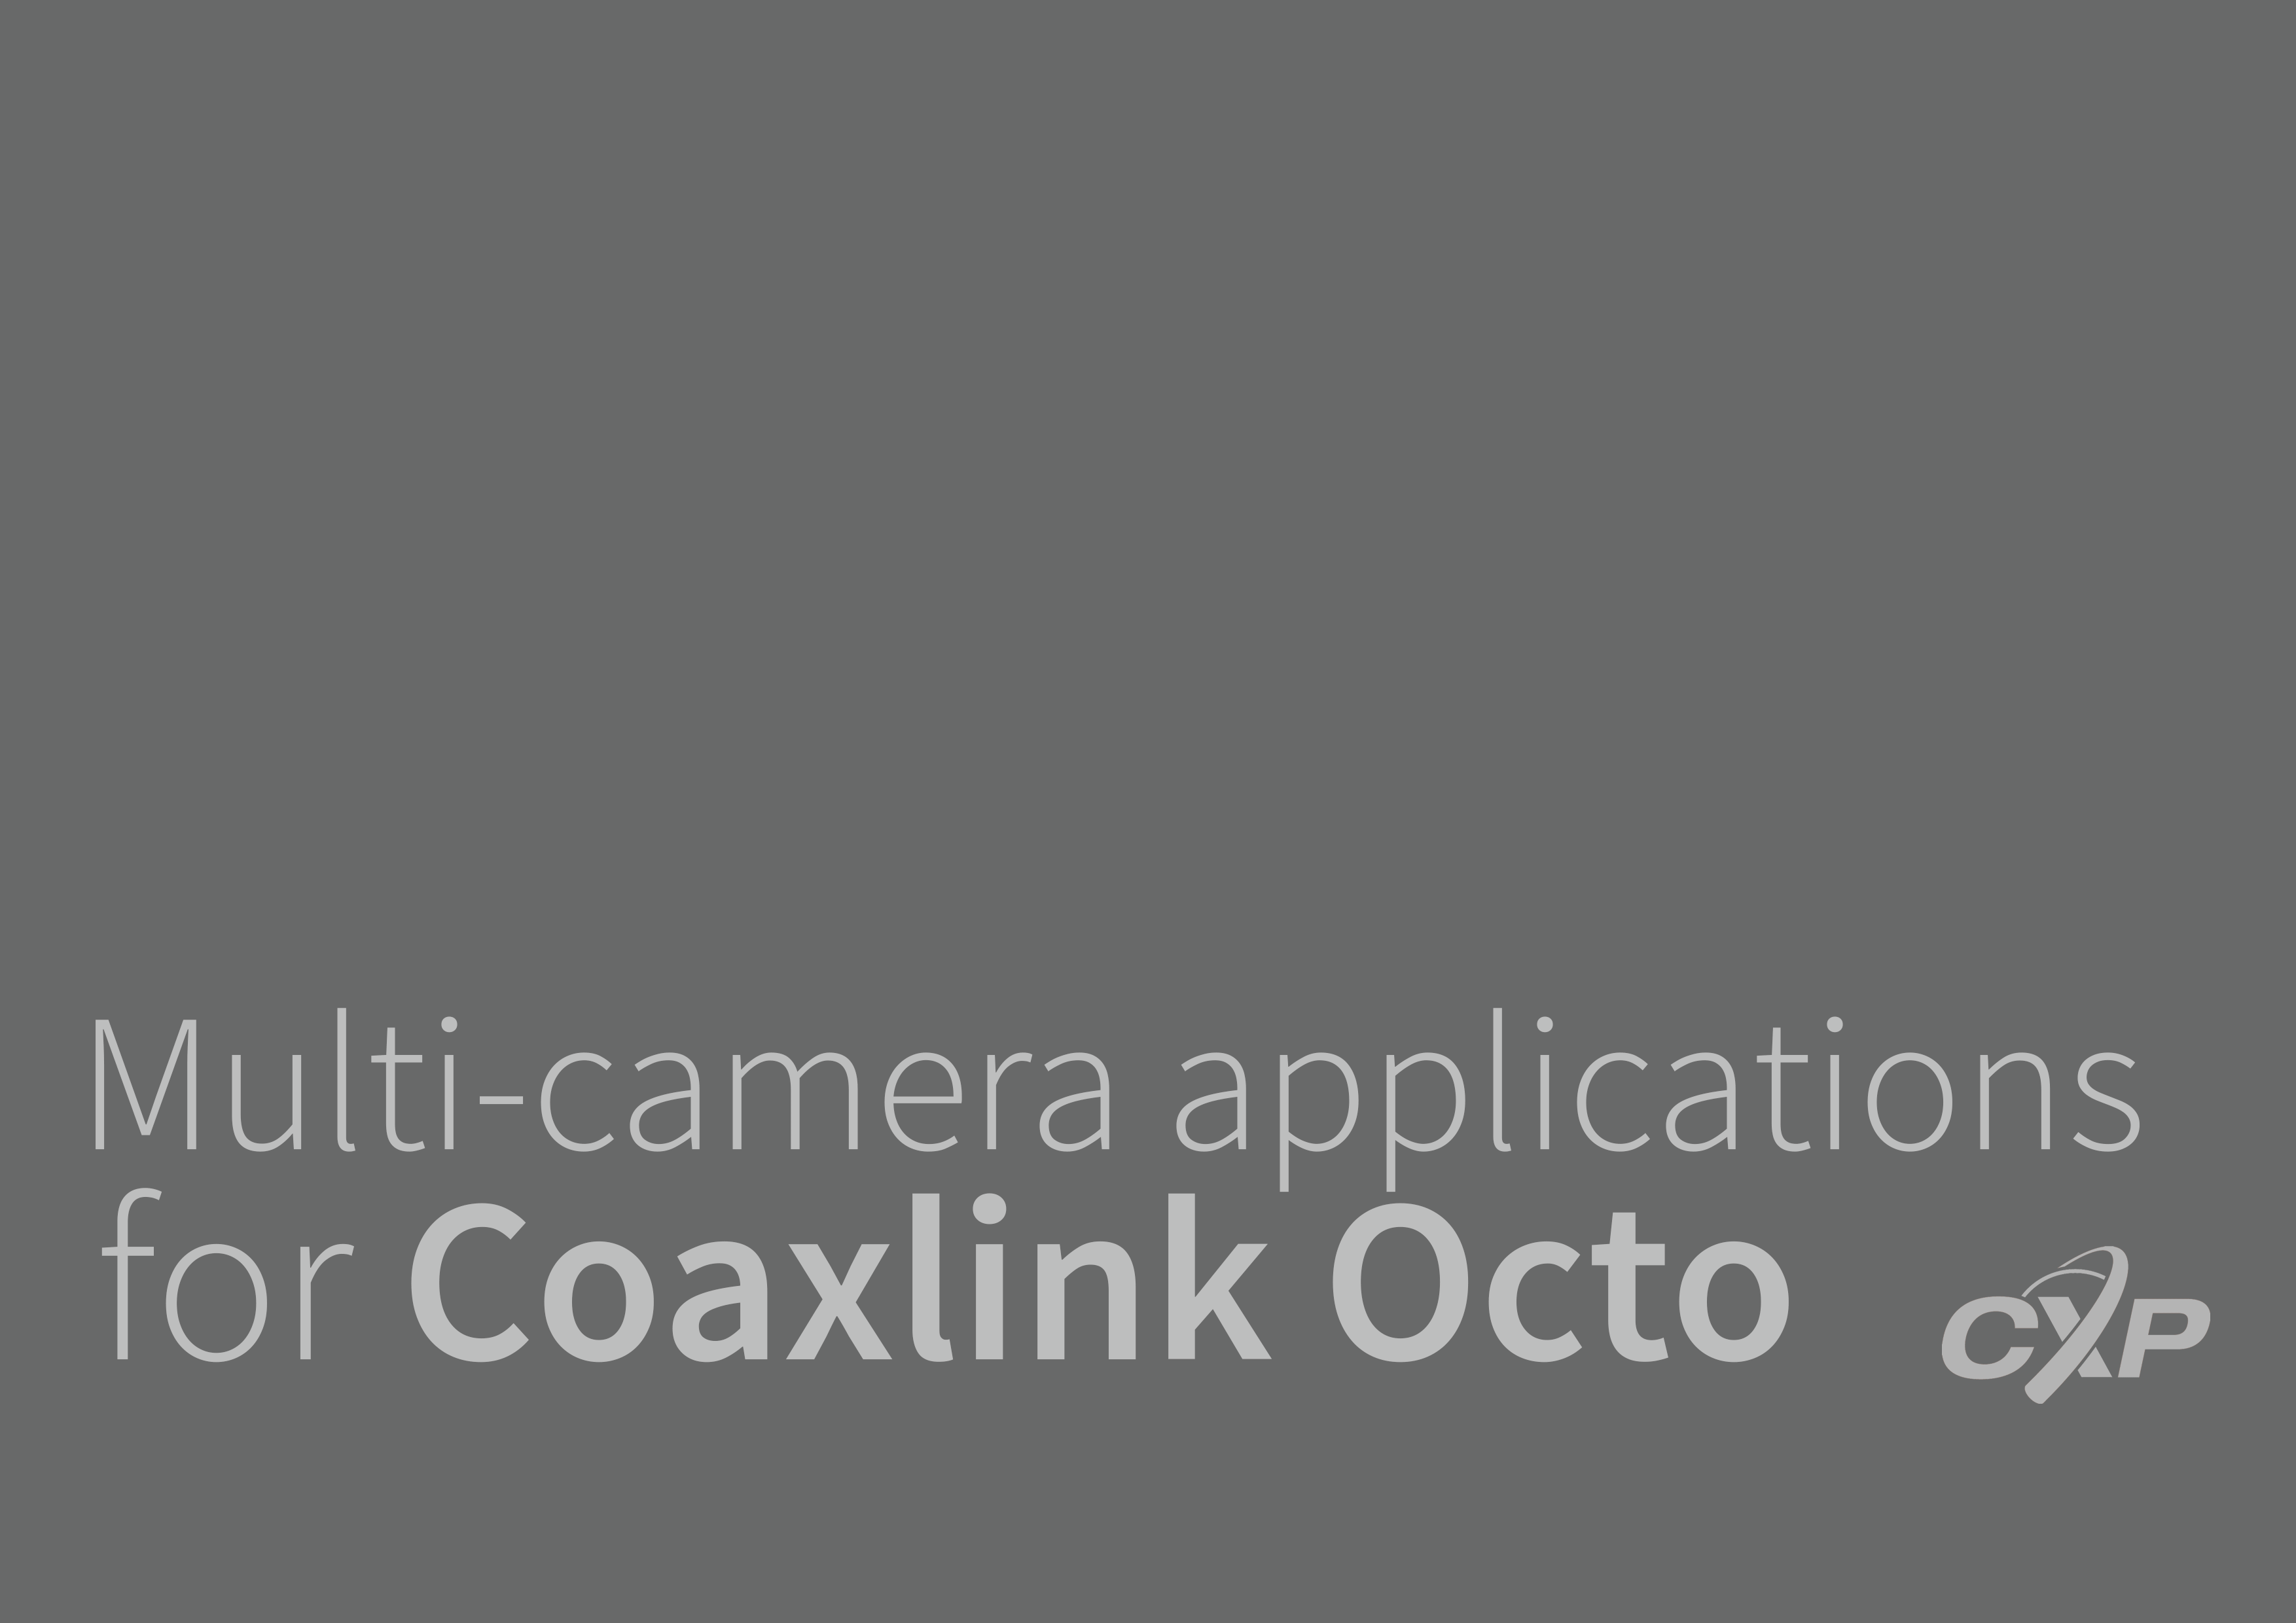 하나의 Coaxlink 카드에 최대 8대의 카메라 연결 가능